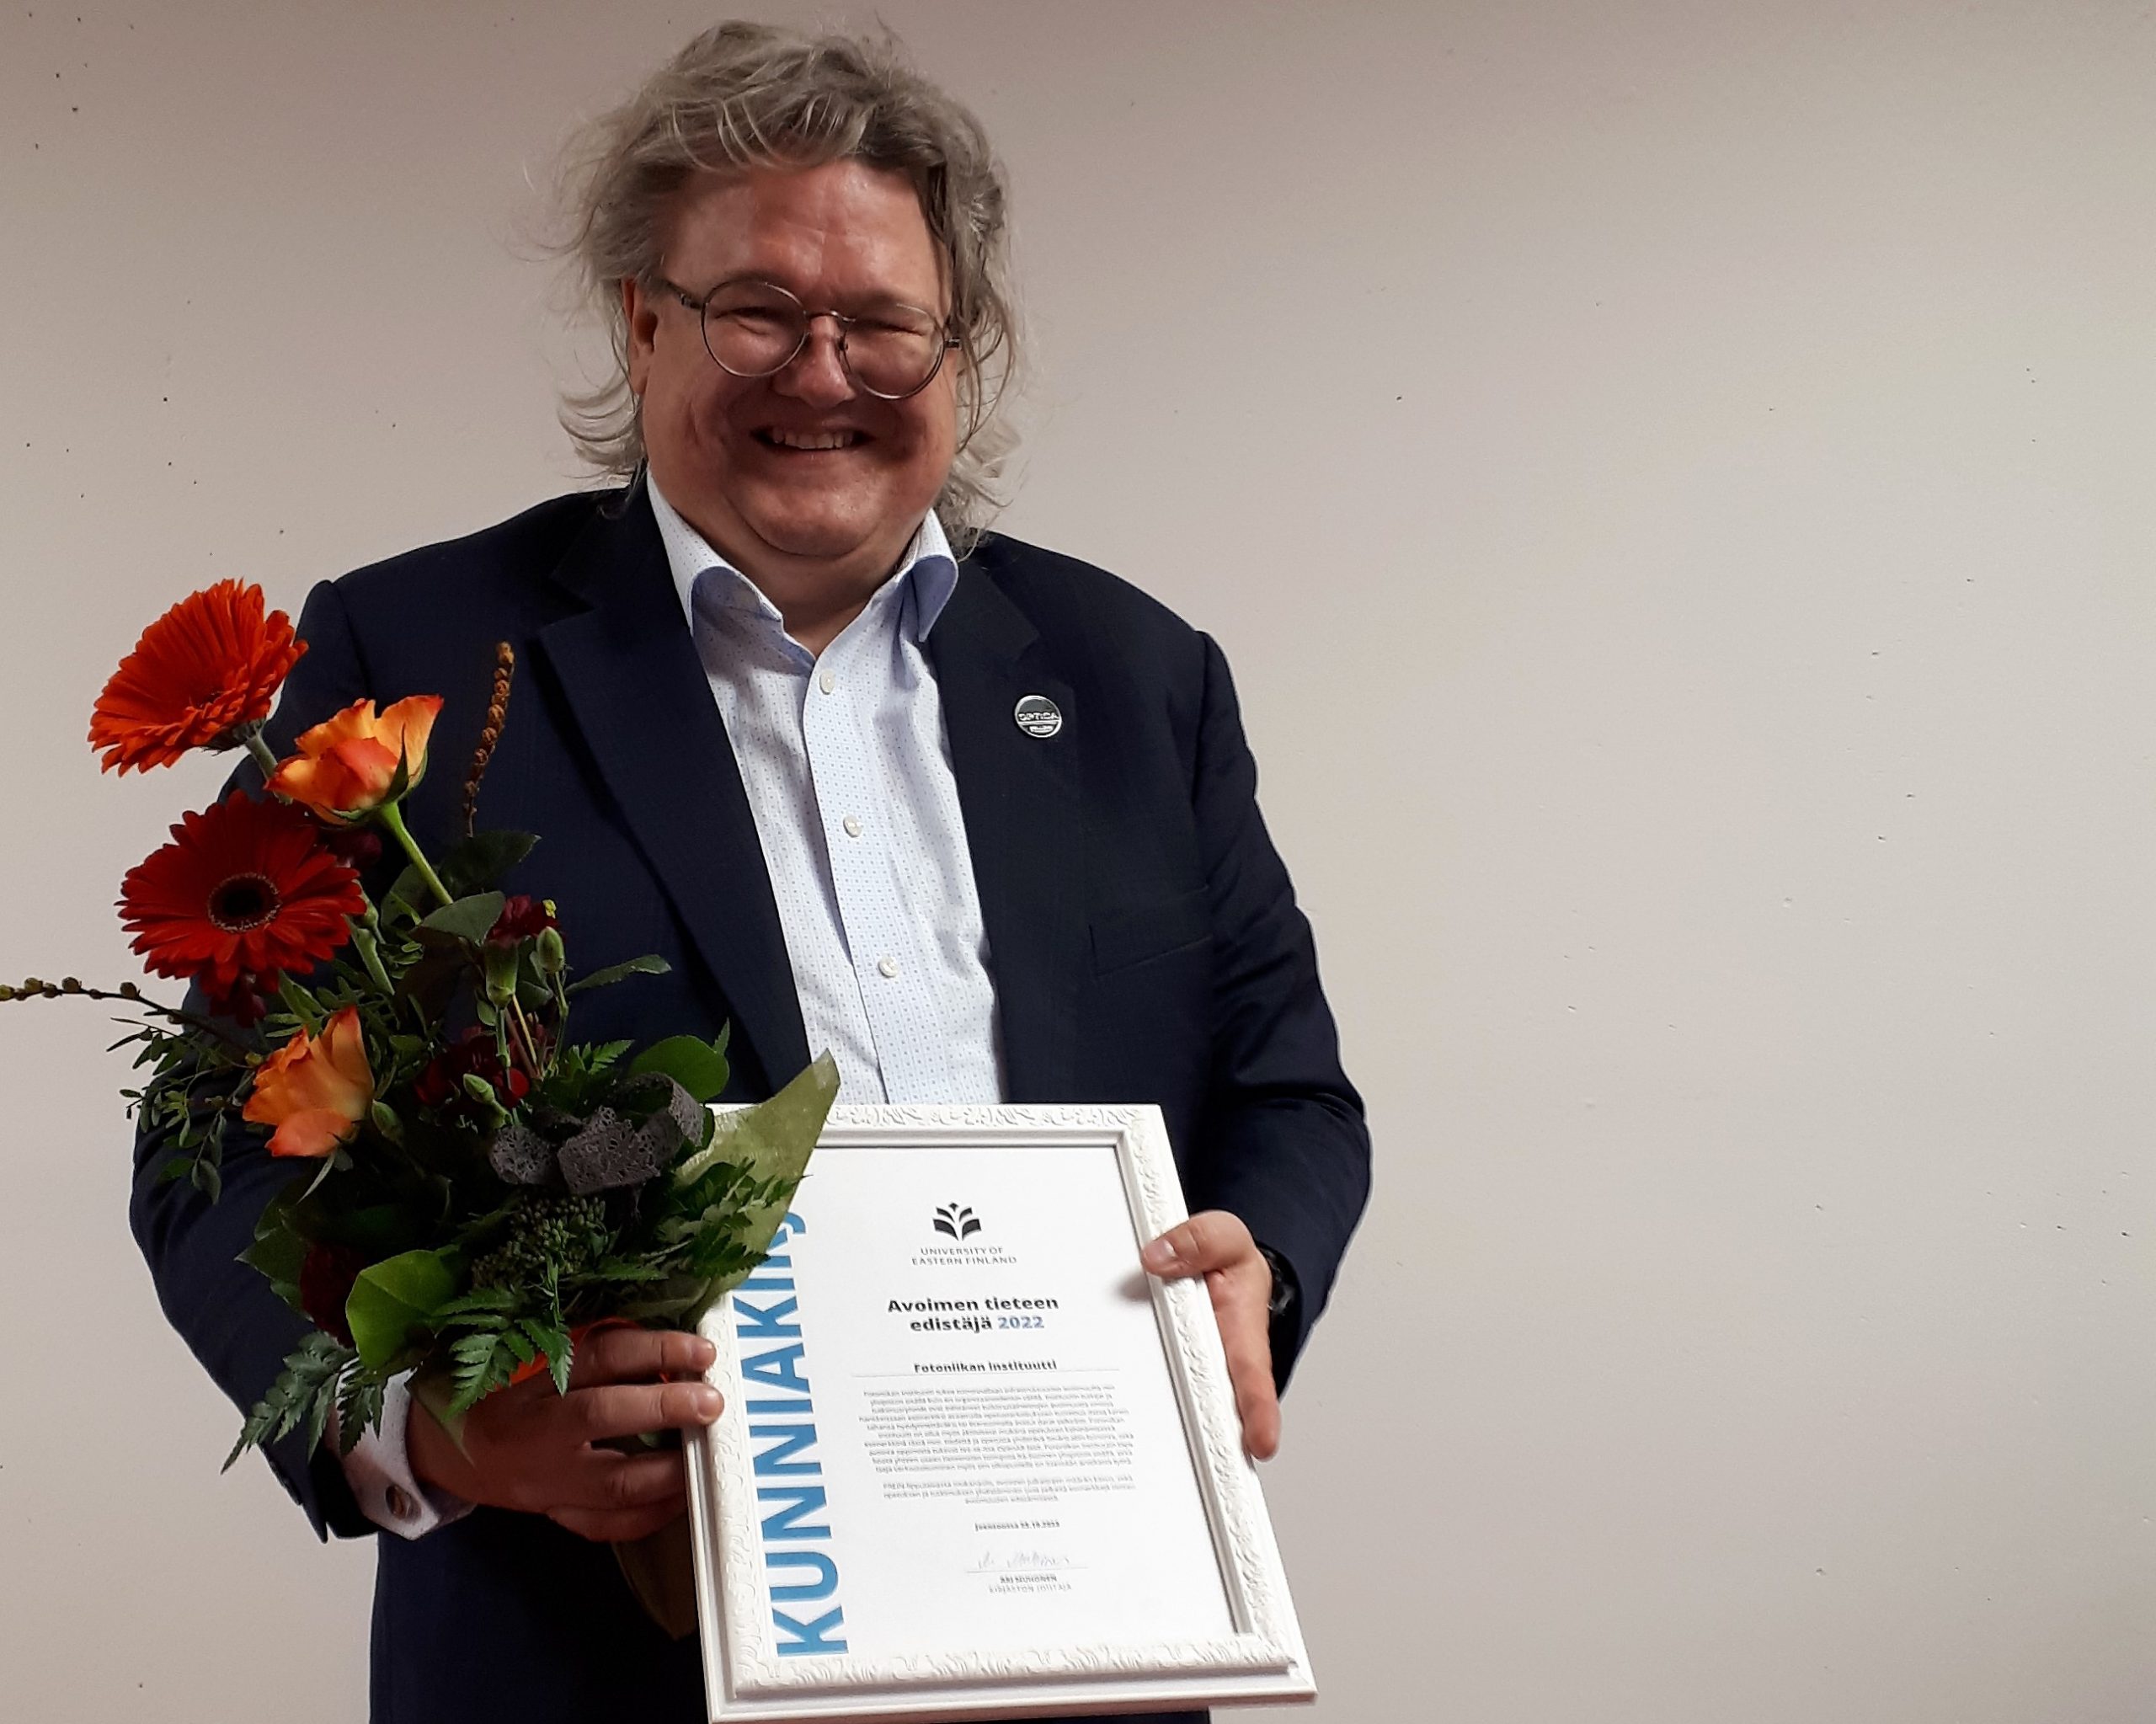 Professori Jyrki Saarinen, kukkakimppu, kunniakirja. Professor Jyrki Saarinen, flowers, diploma.